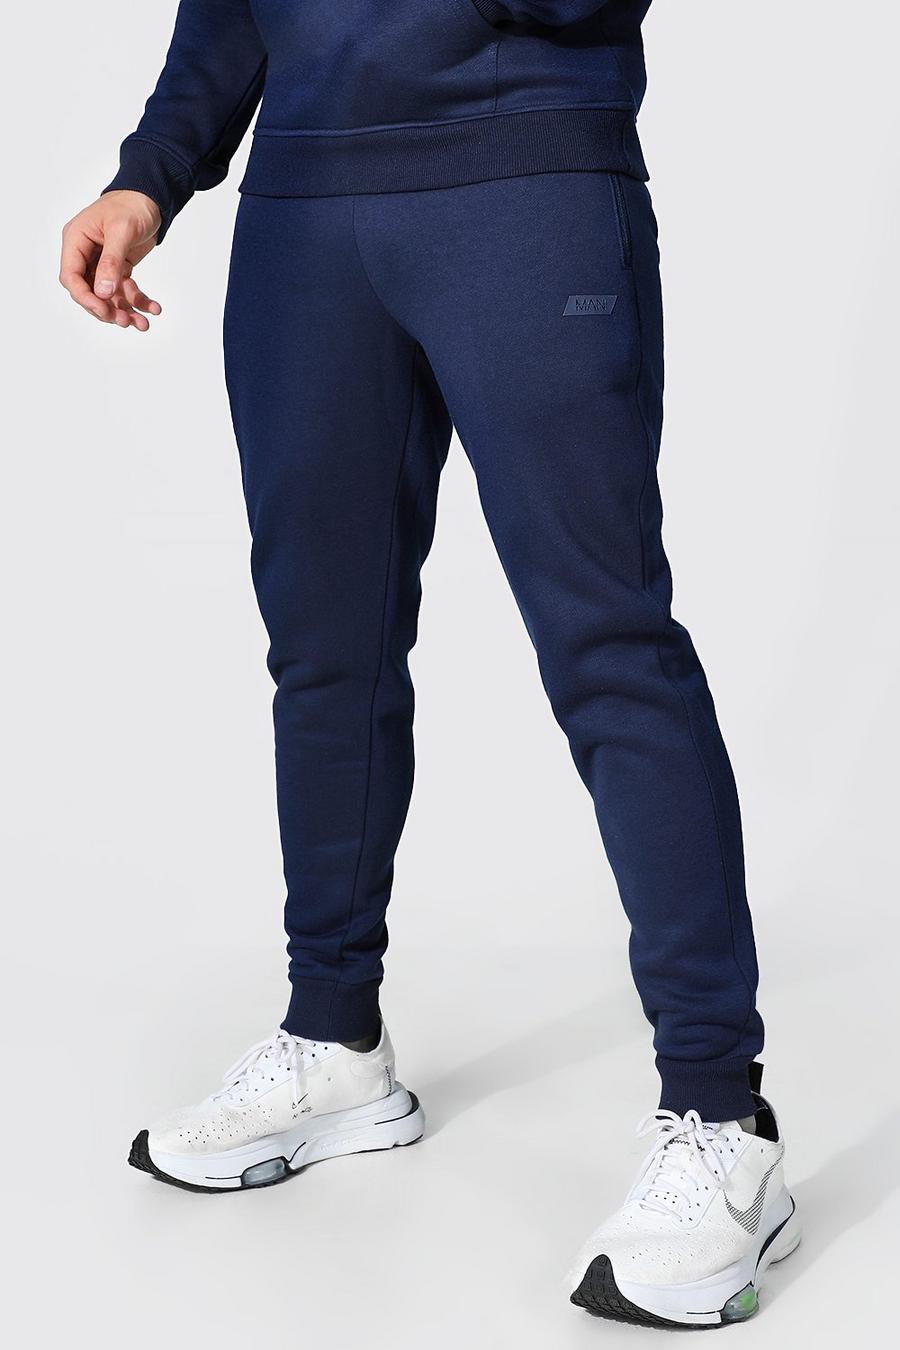 Pantalón deportivo MAN Active, Navy azul marino image number 1